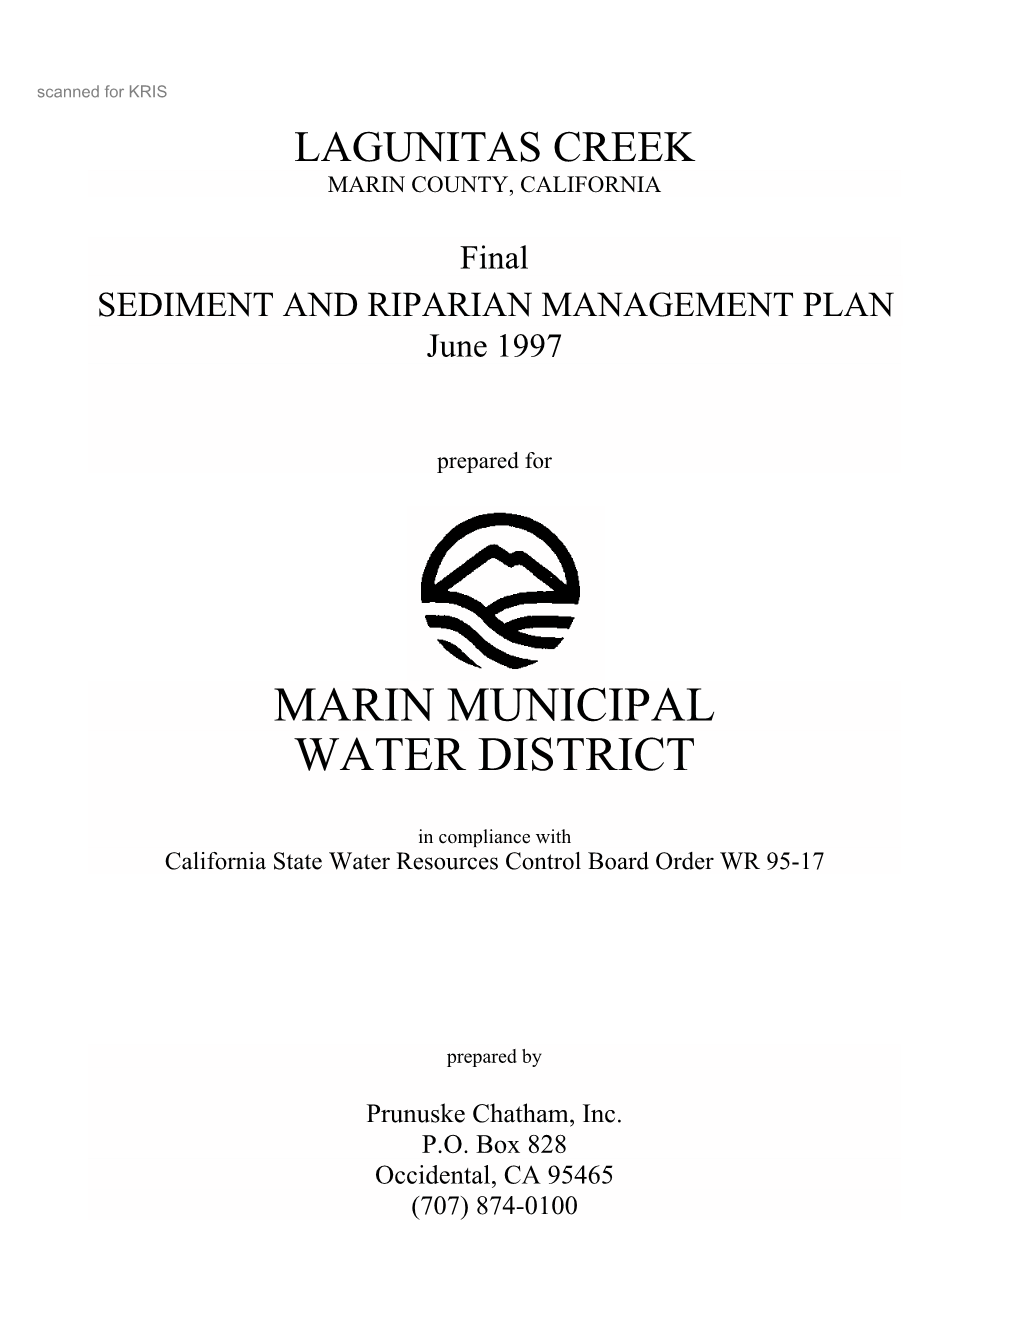 Marin Municipal Water District (MMWD)